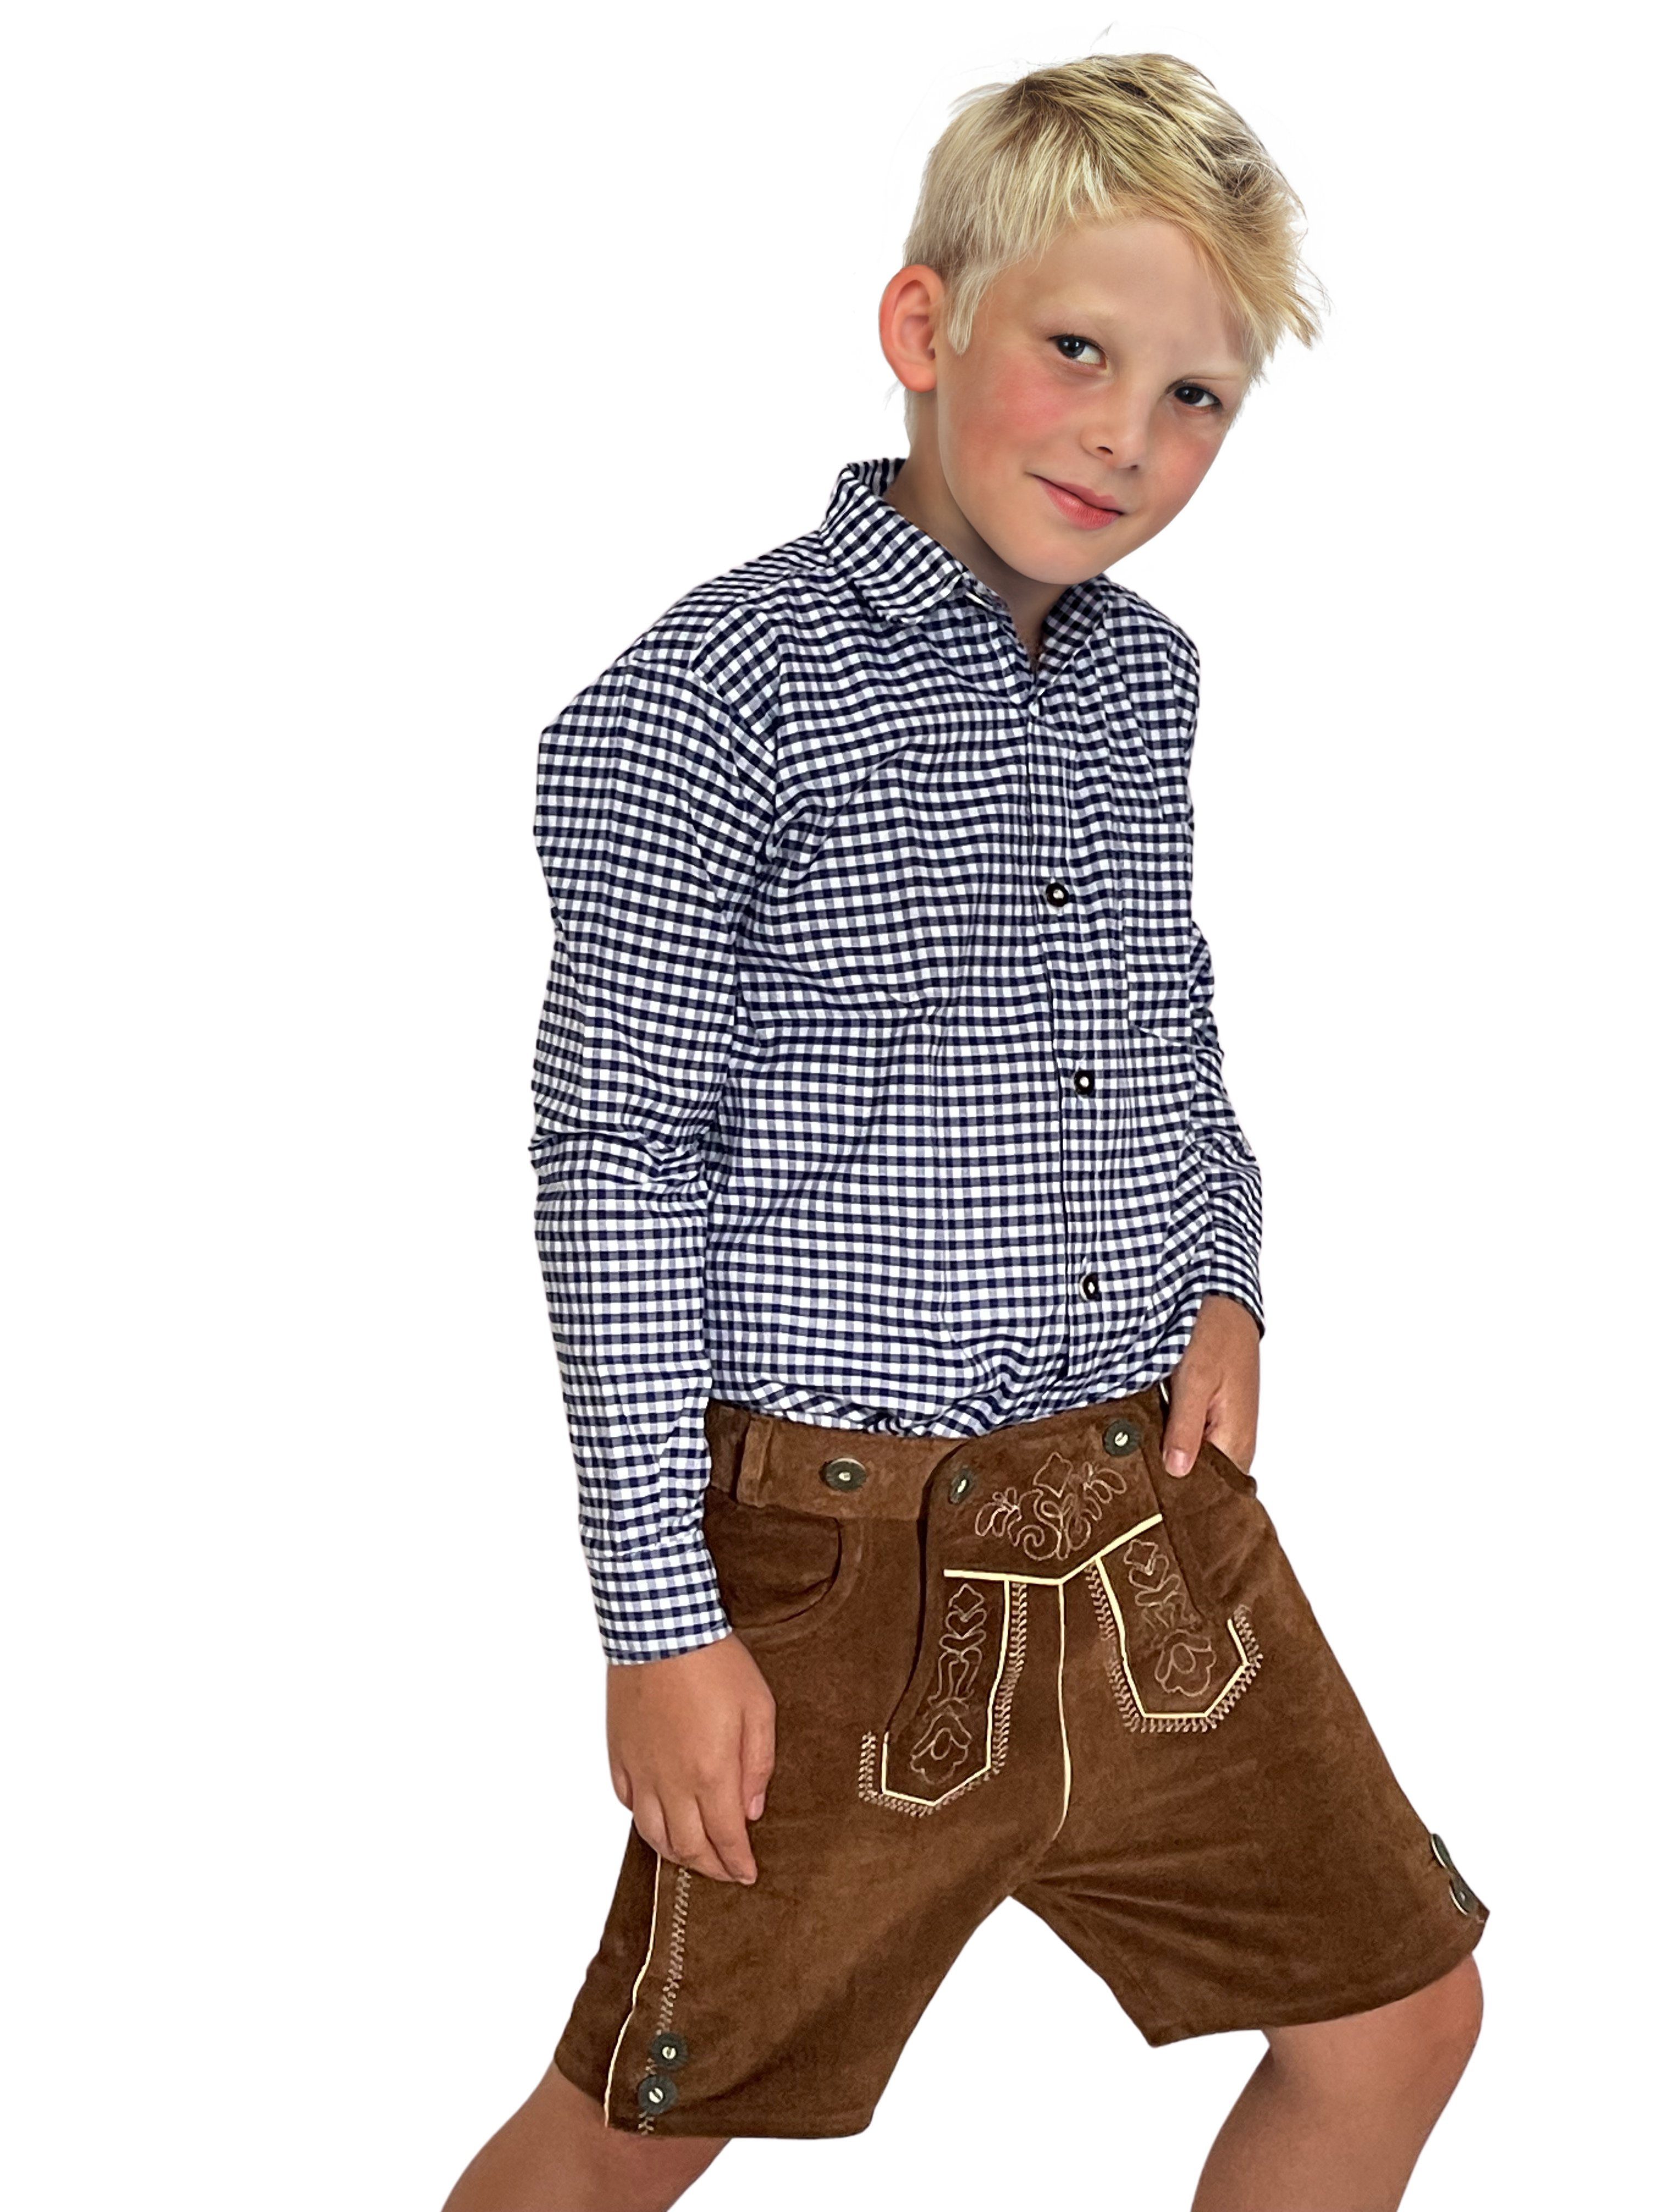 Trachterbahn Trachtenhemd Trachtenhemd Junge kariert Baumwolle langarm mit Halstuch 45x45 cm